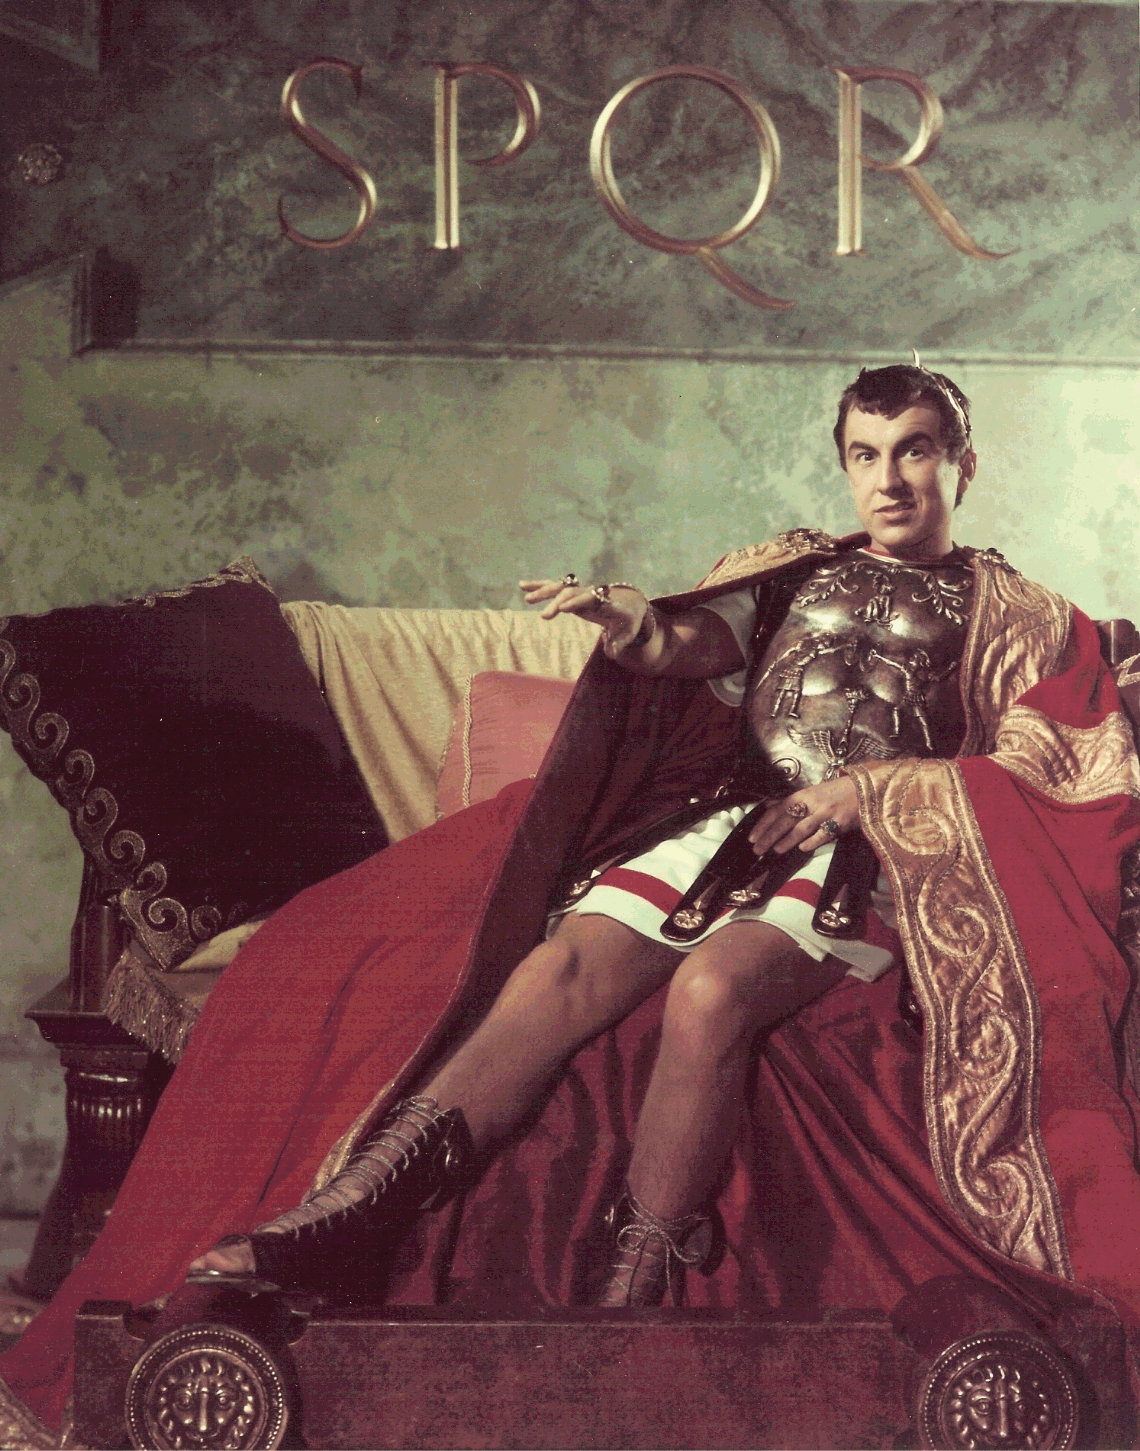 [Caligula+on+Throne.gif]